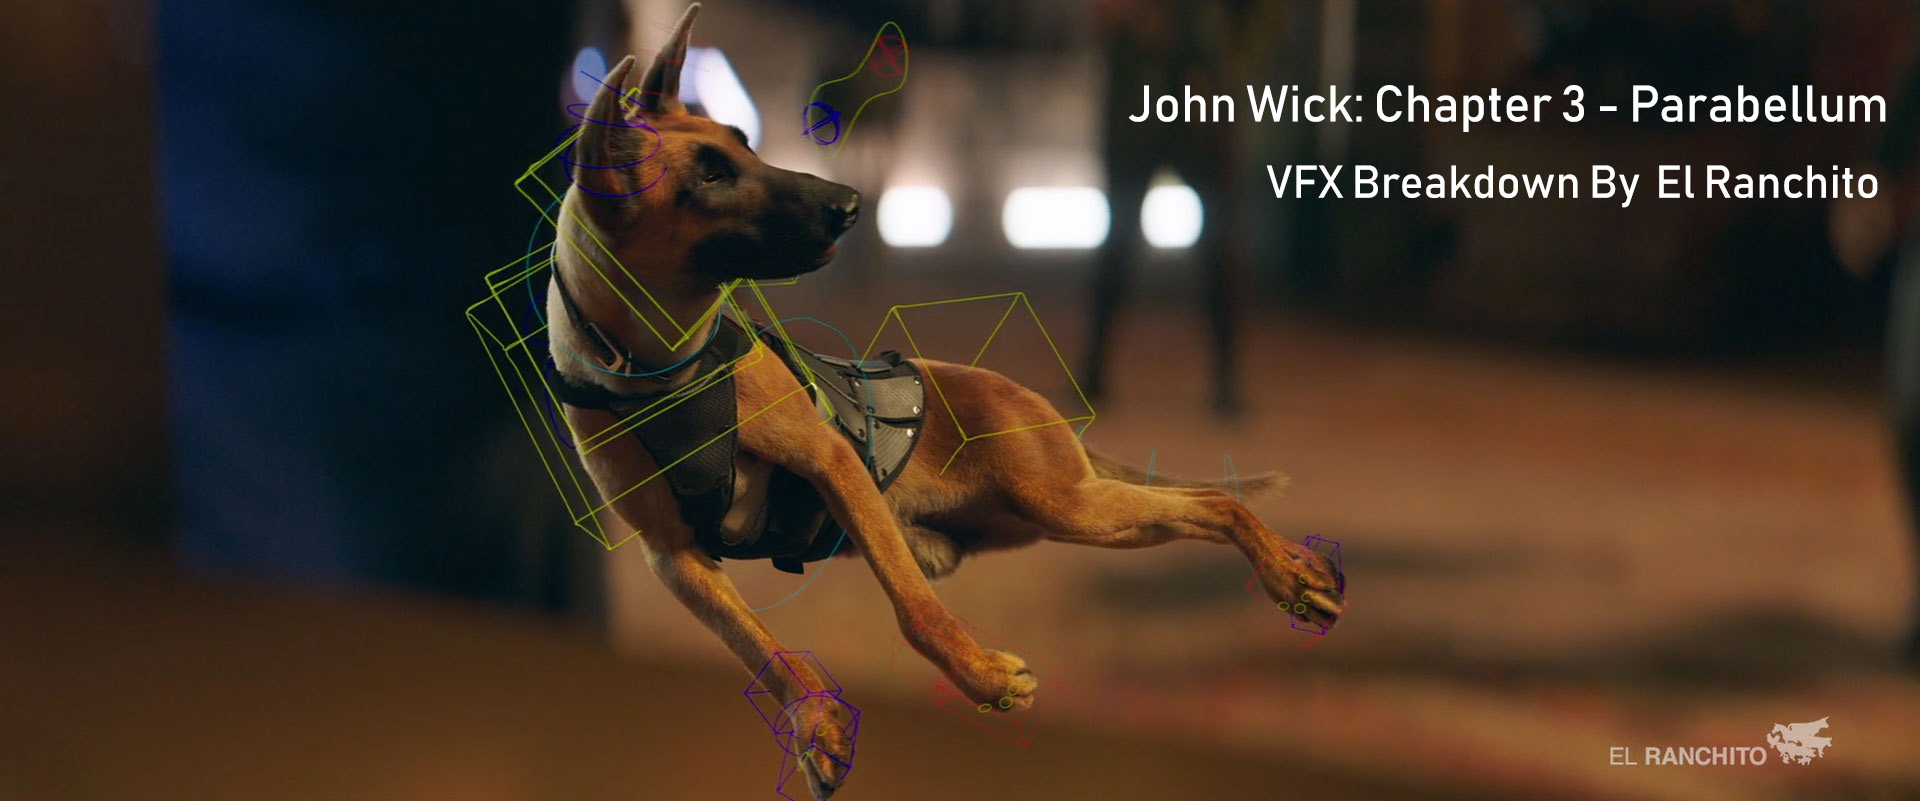 John Wick: Chapter 3 – Parabellum VFX Breakdown